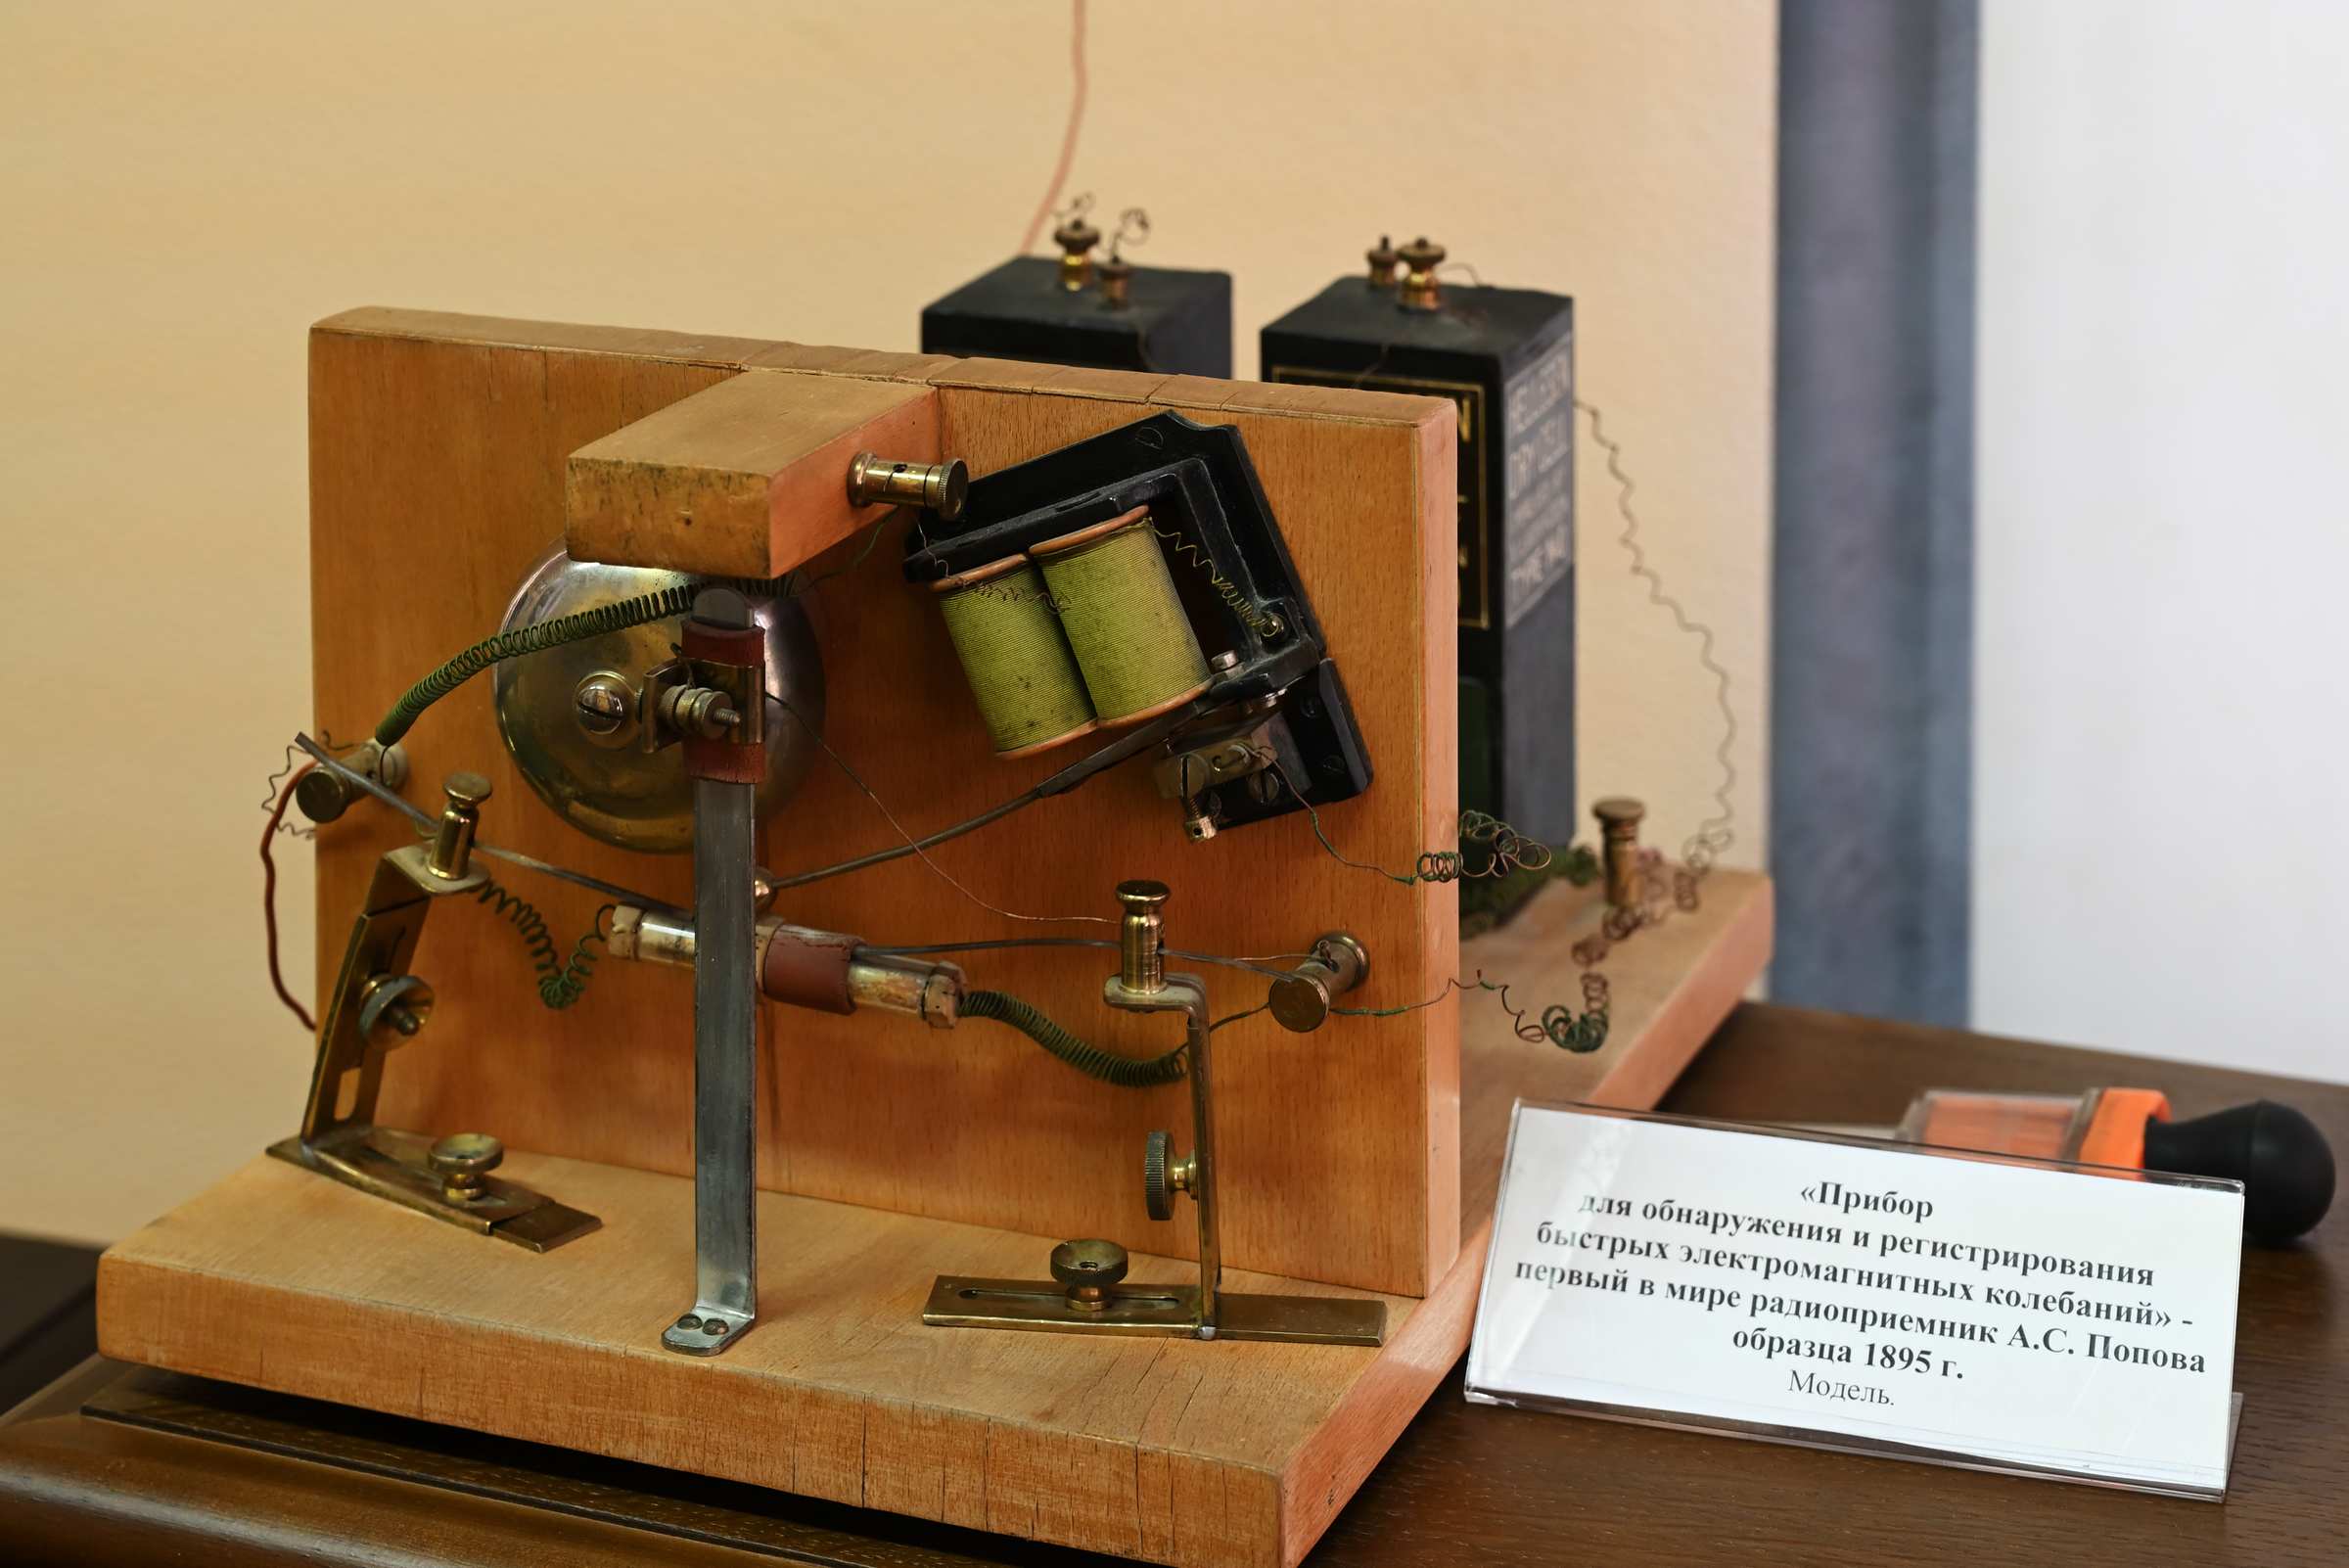 Первый в мире радиоприёмник А. С. Попова. Музей радио имени А. С. Попова в Екатеринбурге.